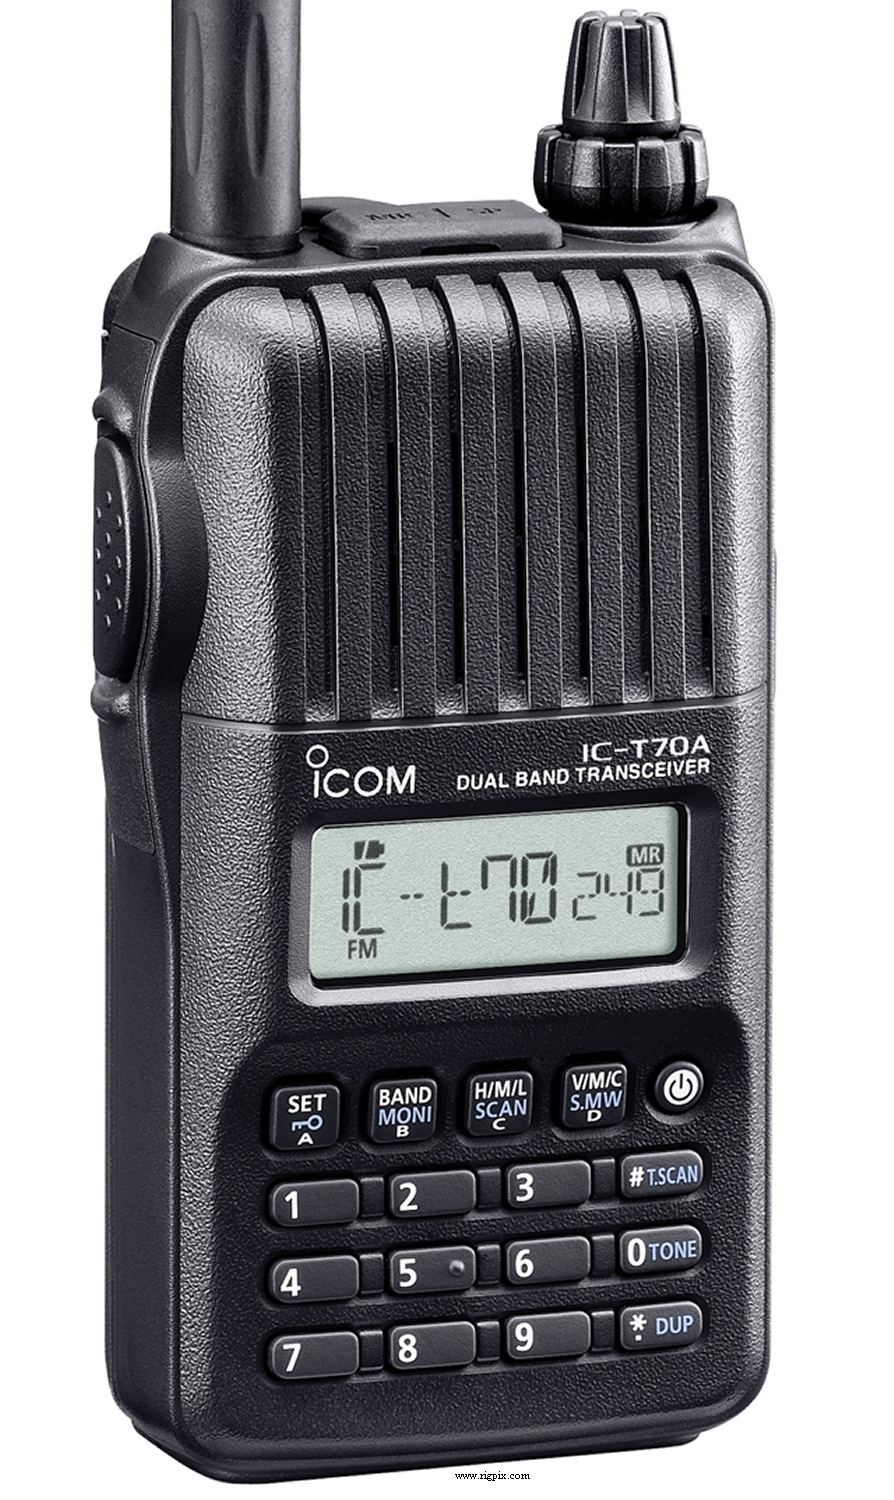 ICOM VHS/UHS DUO FMトランシーバー I C-T70-